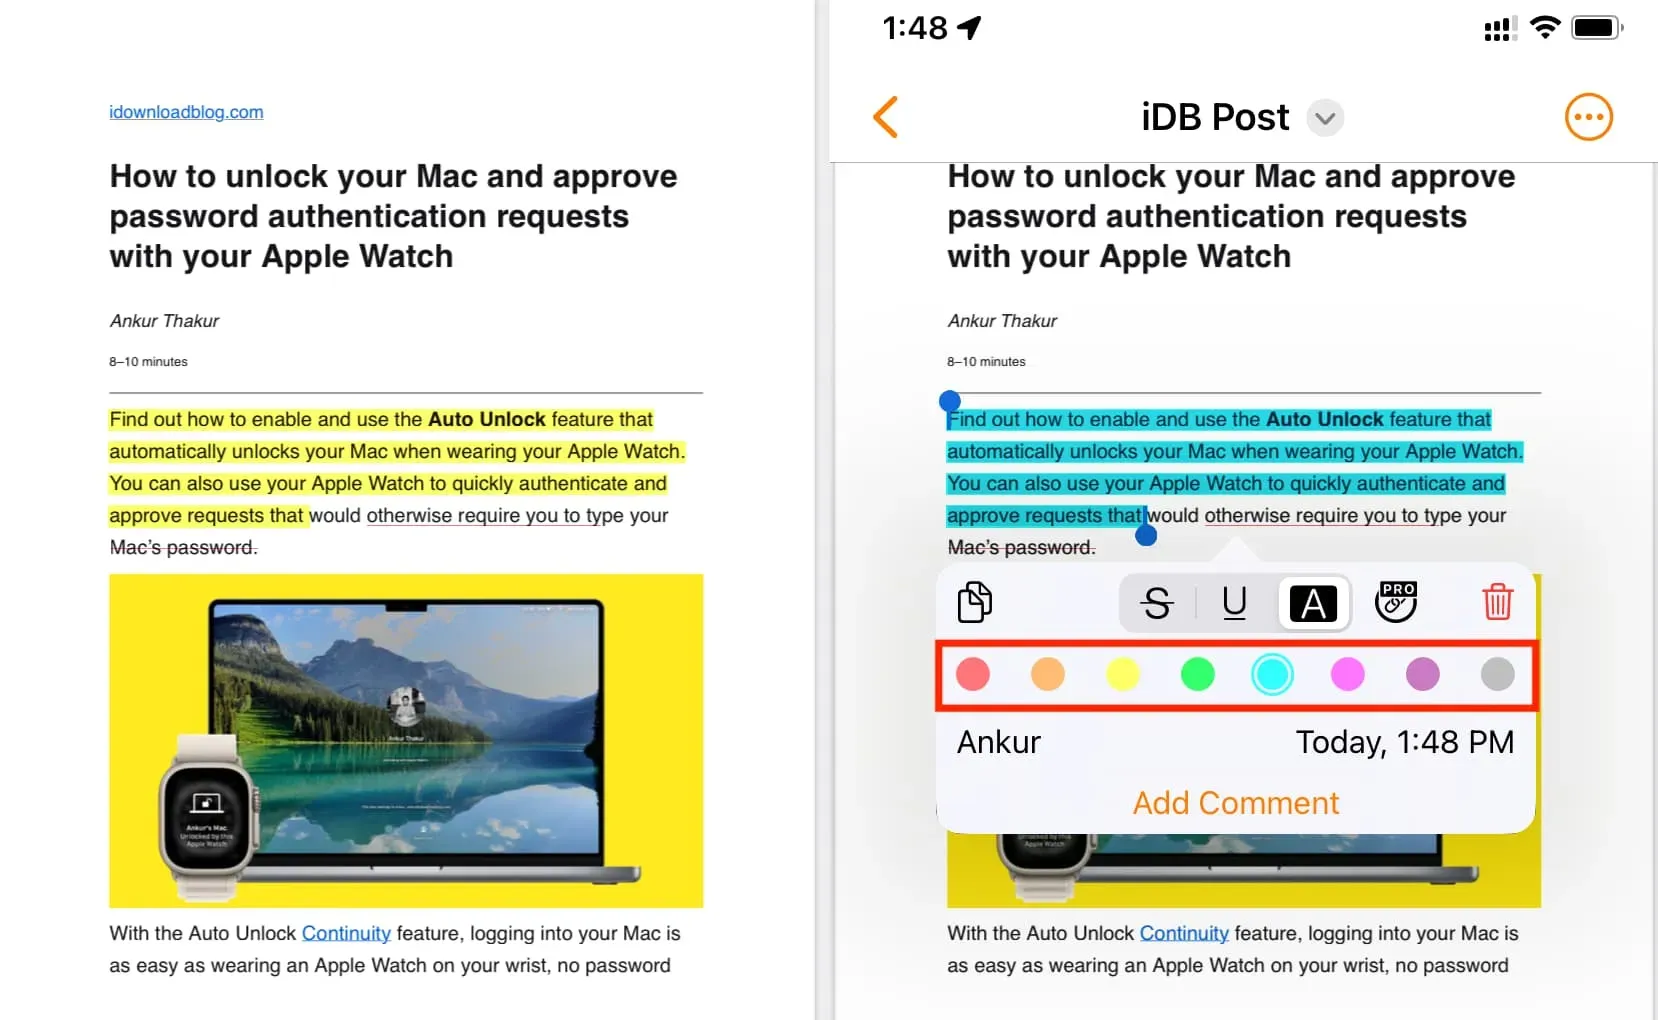 Cambiar el color de resaltado de texto en PDF en iPhone